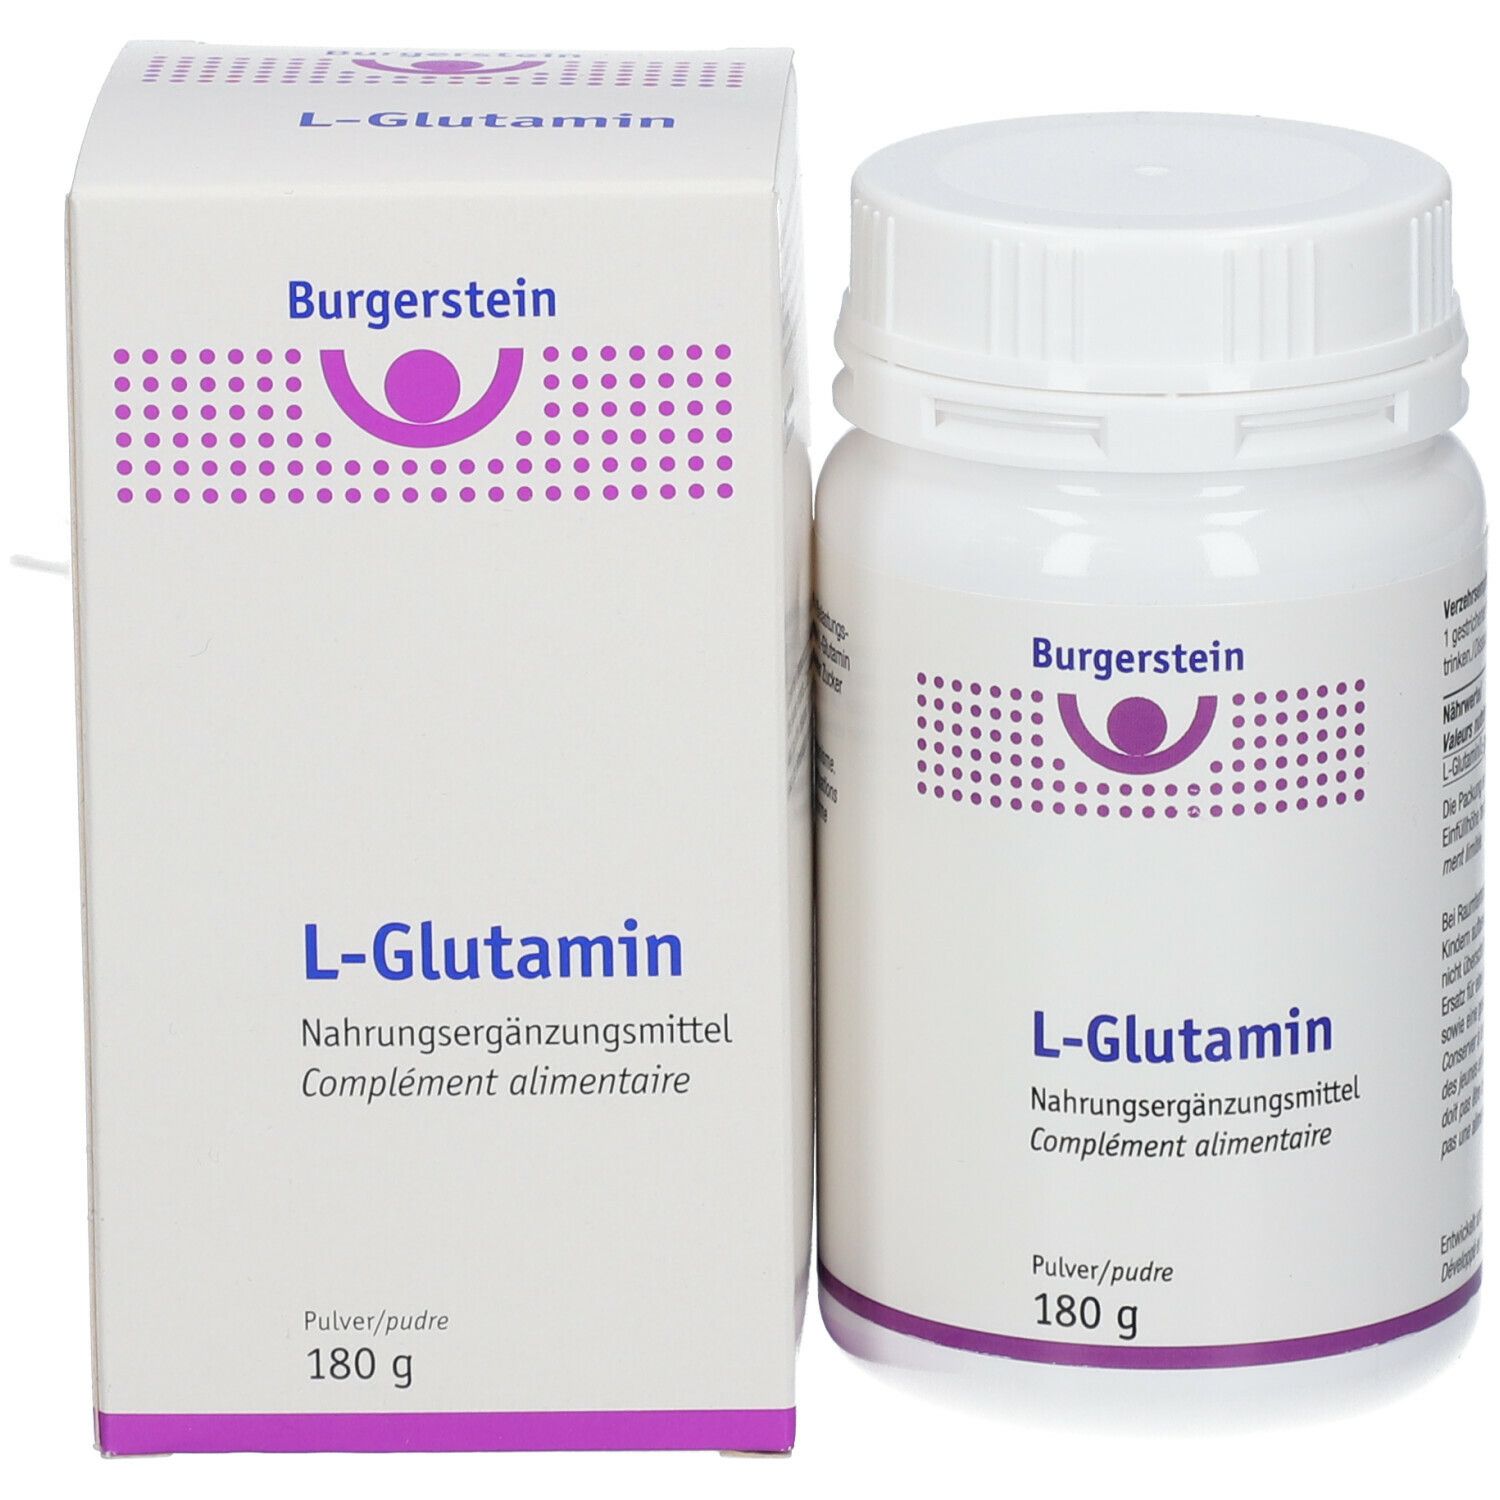 Burgerstein L-Glutamin